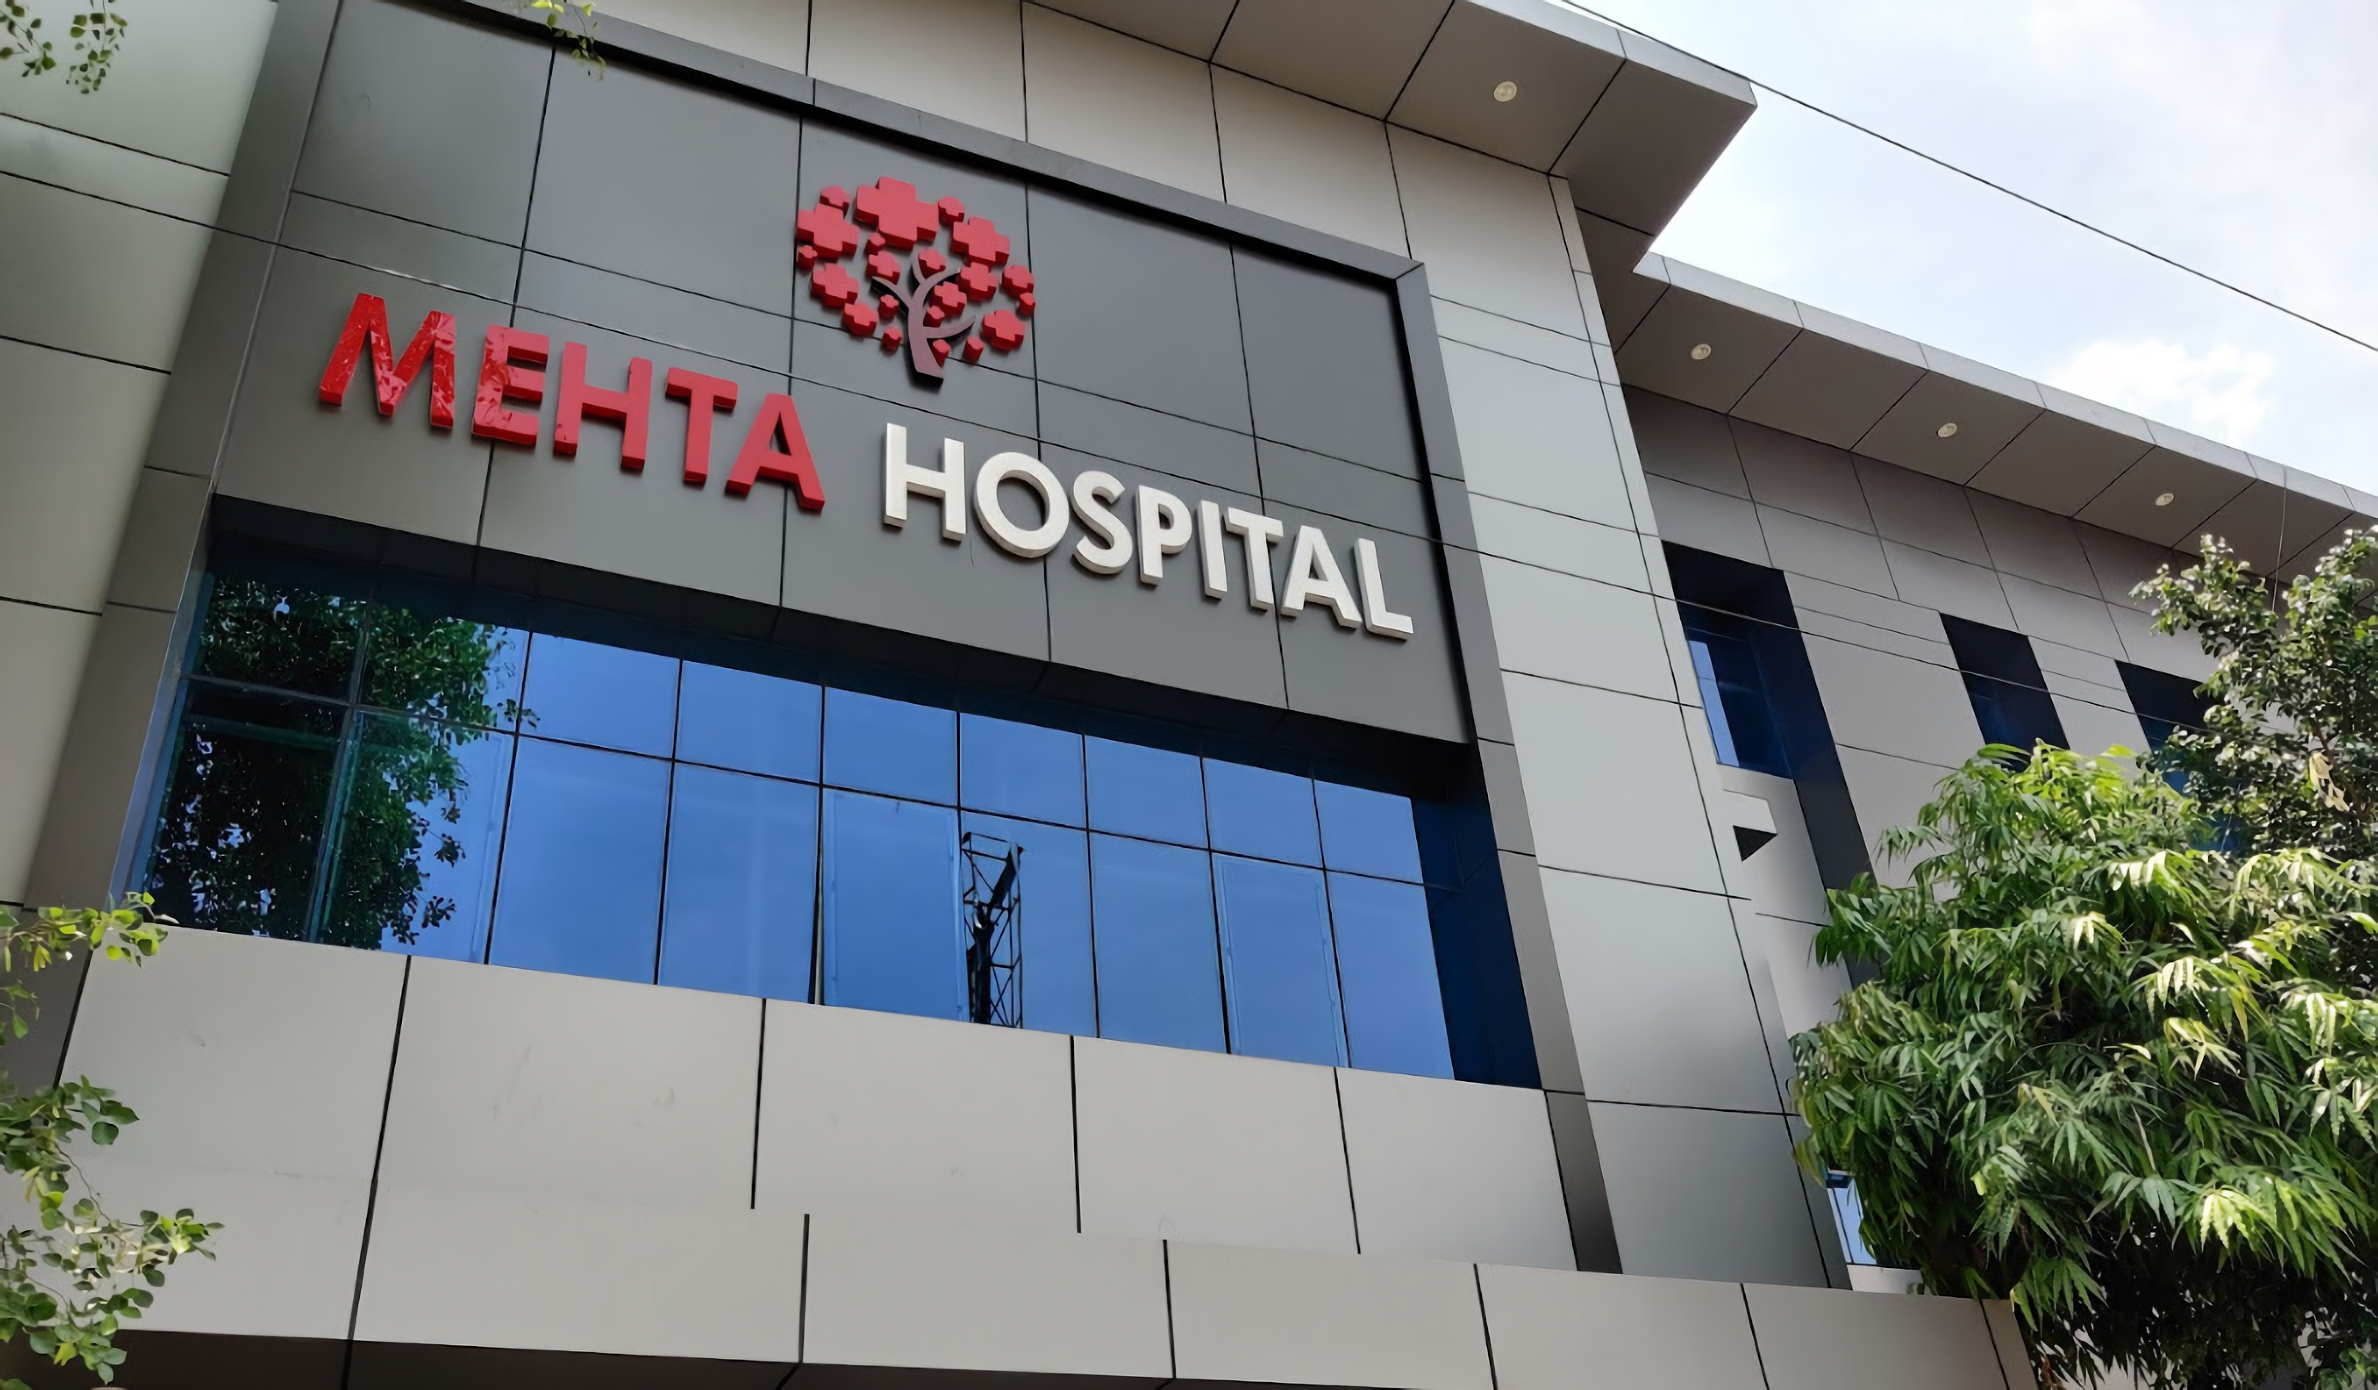 Mehta Hospital & IVF Centre